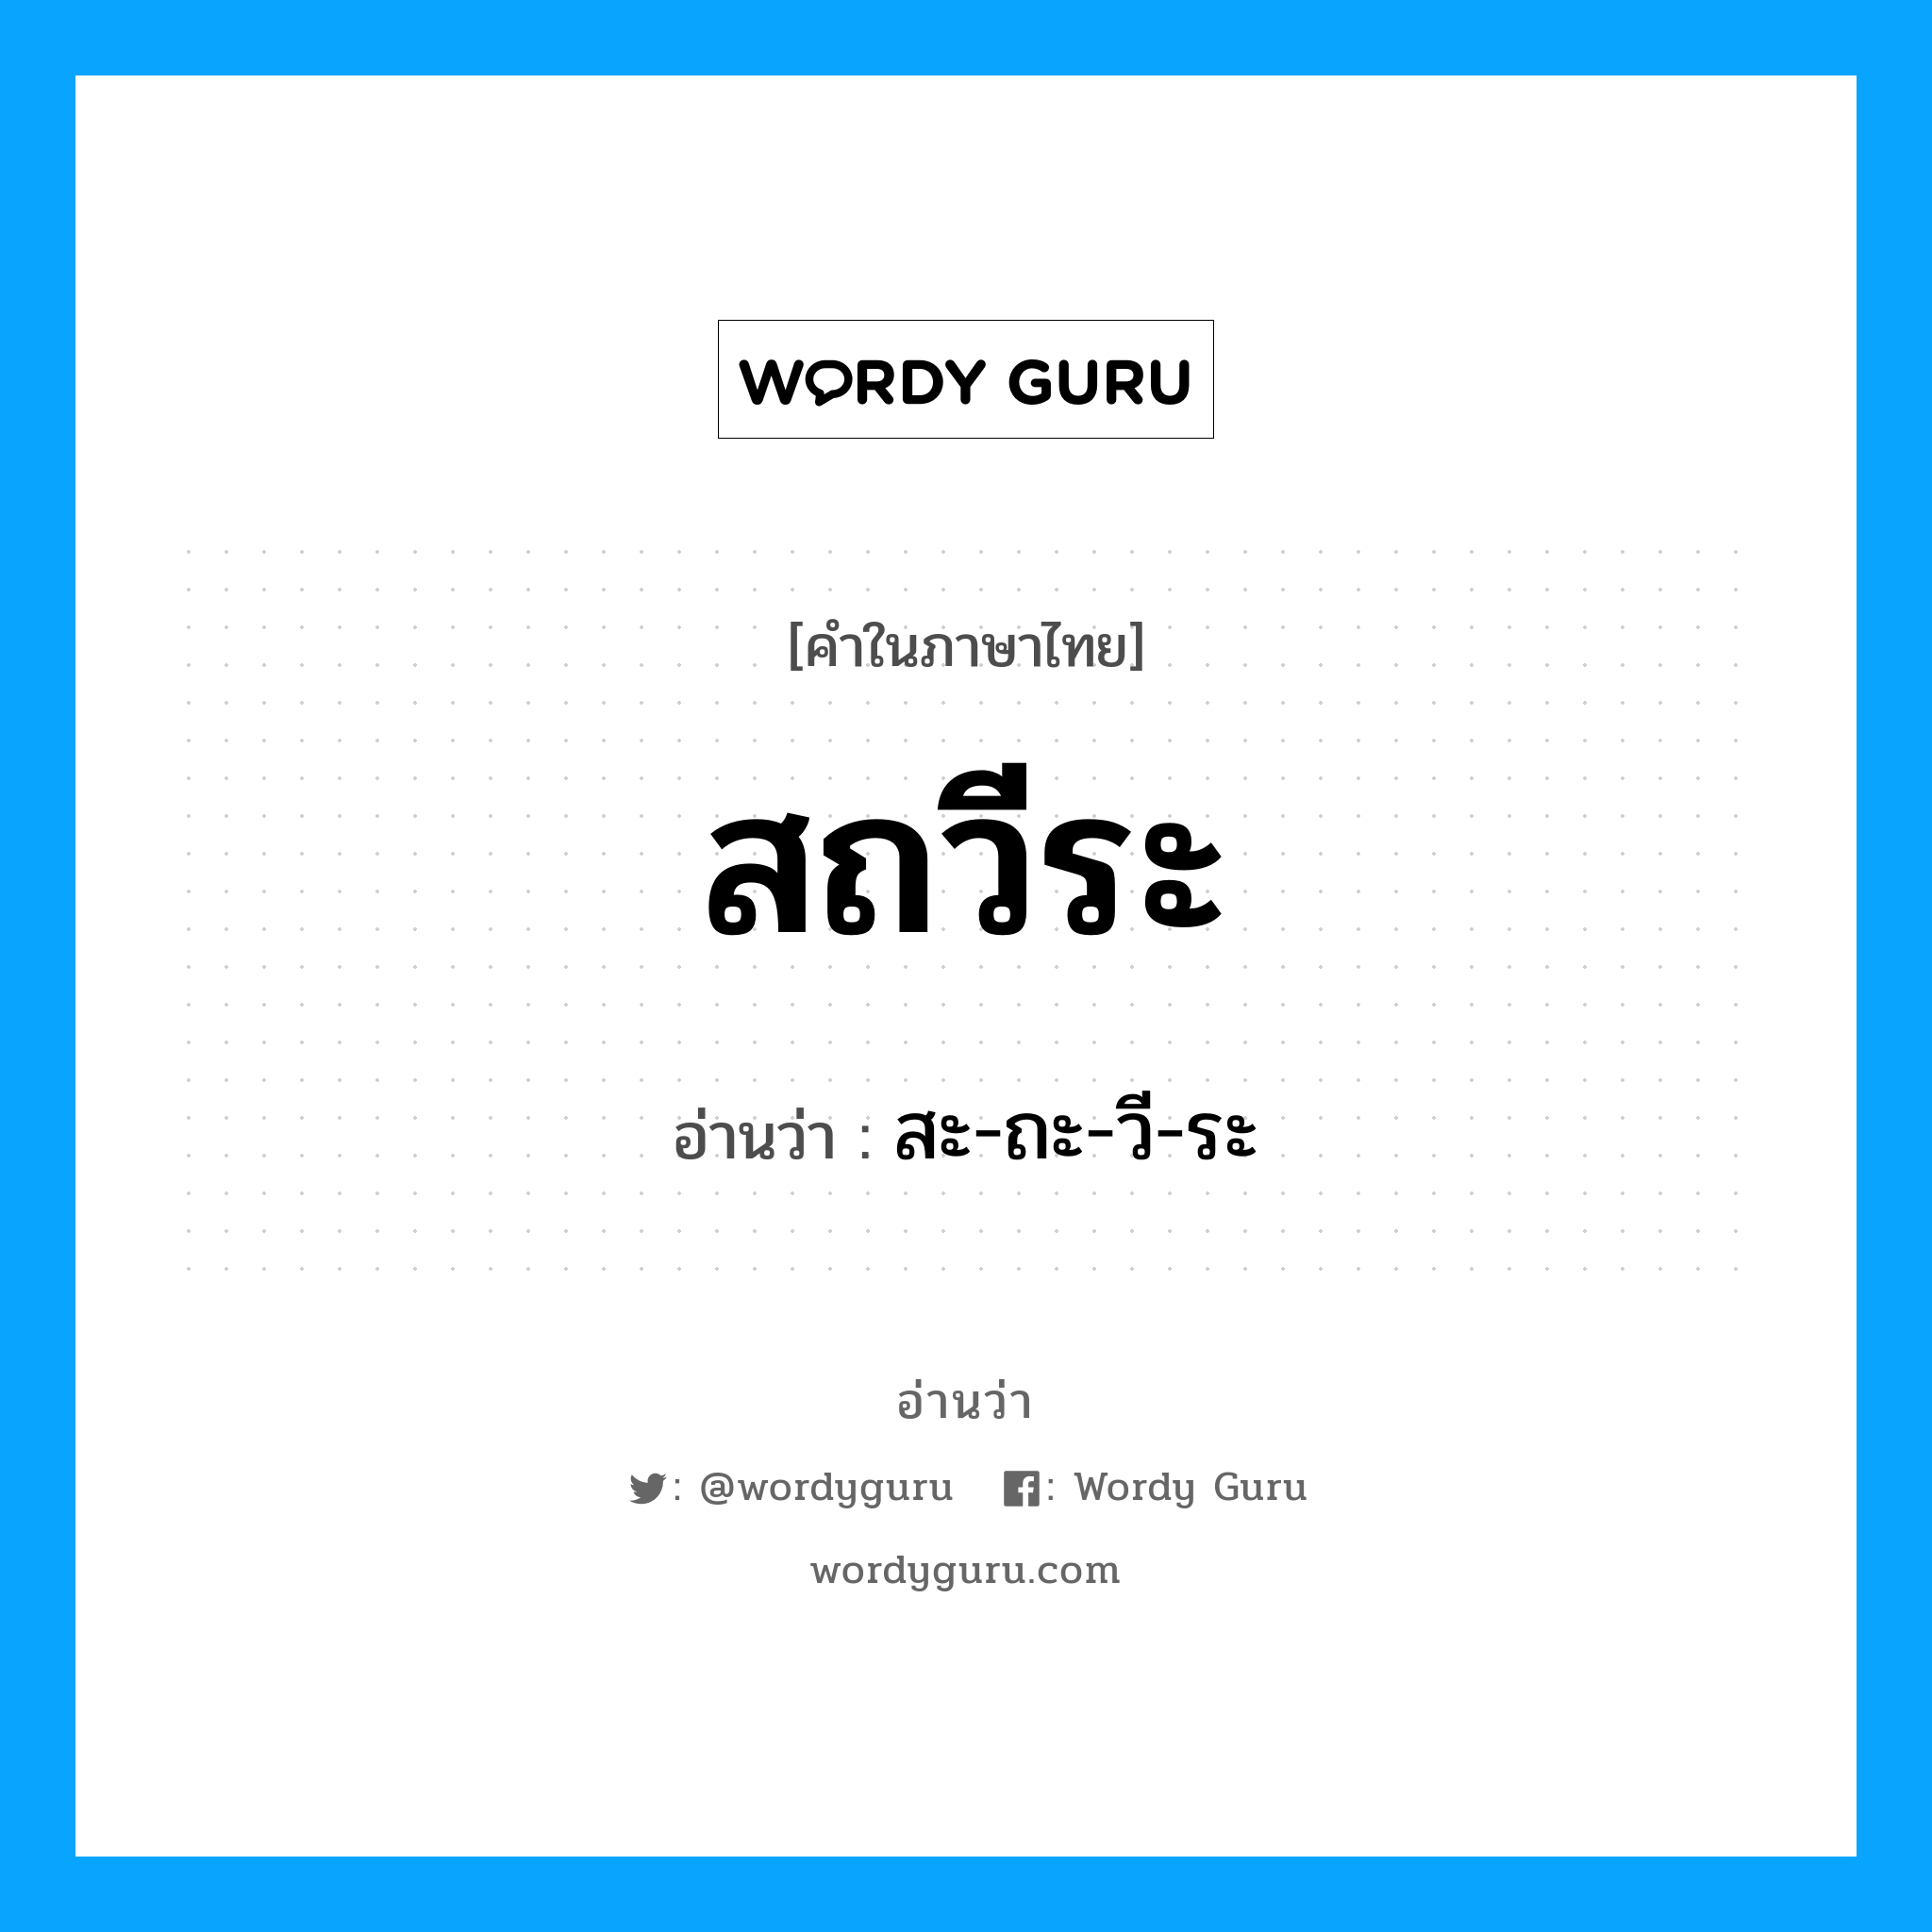 สะ-ถะ-วี-ระ เป็นคำอ่านของคำไหน?, คำในภาษาไทย สะ-ถะ-วี-ระ อ่านว่า สถวีระ